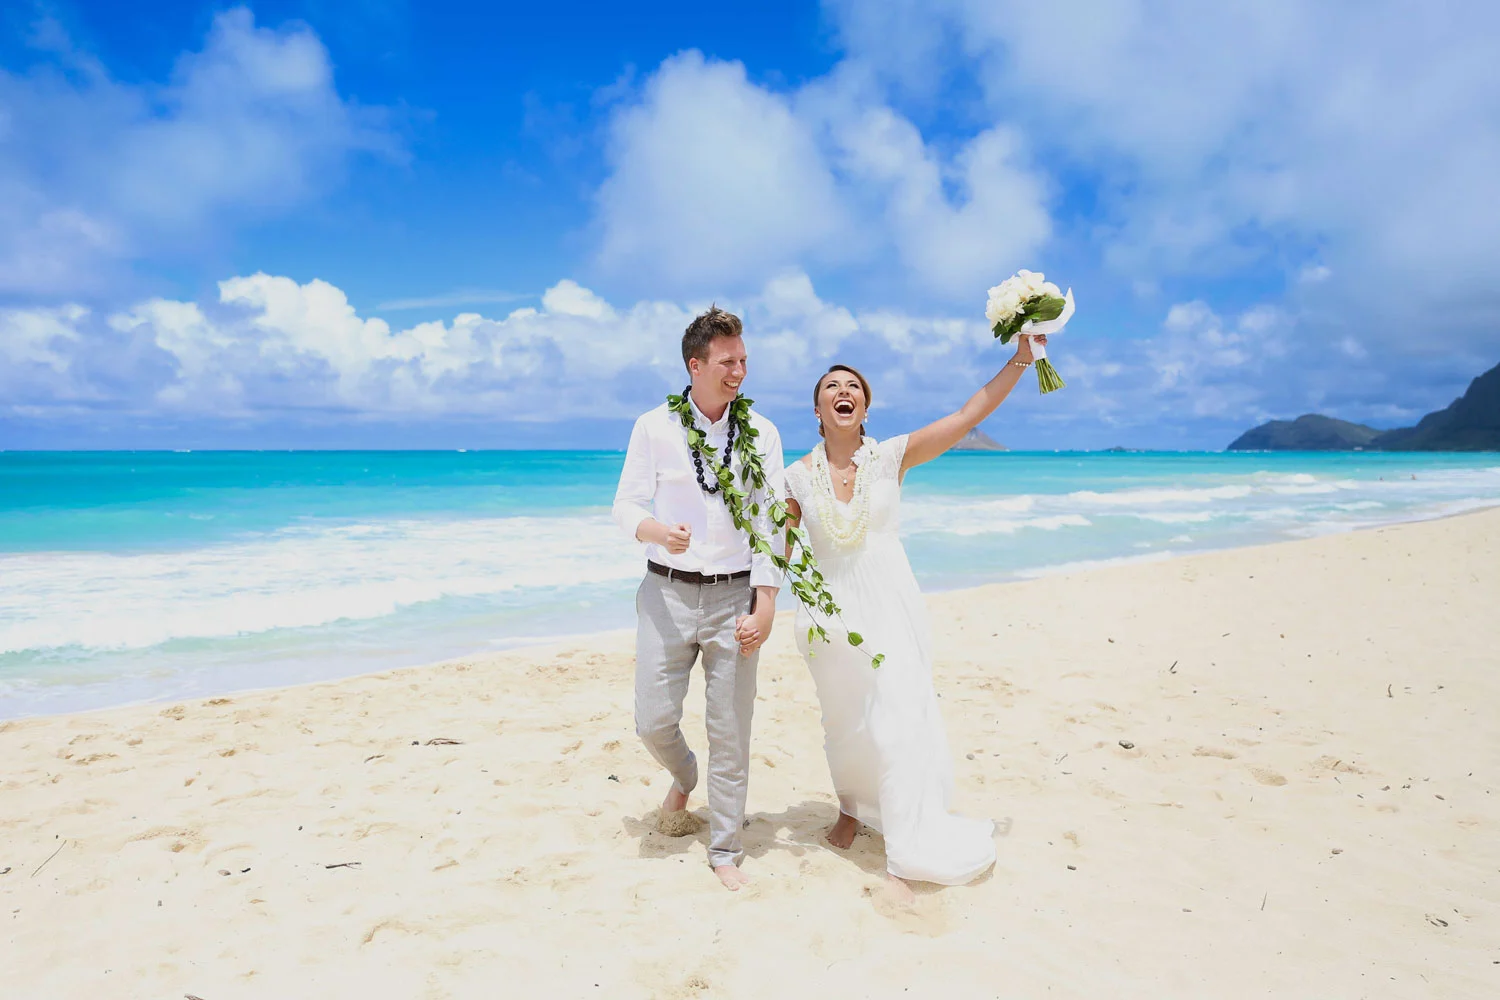 Wedding packages Hawaii all inclusive, Weddings of Hawaii